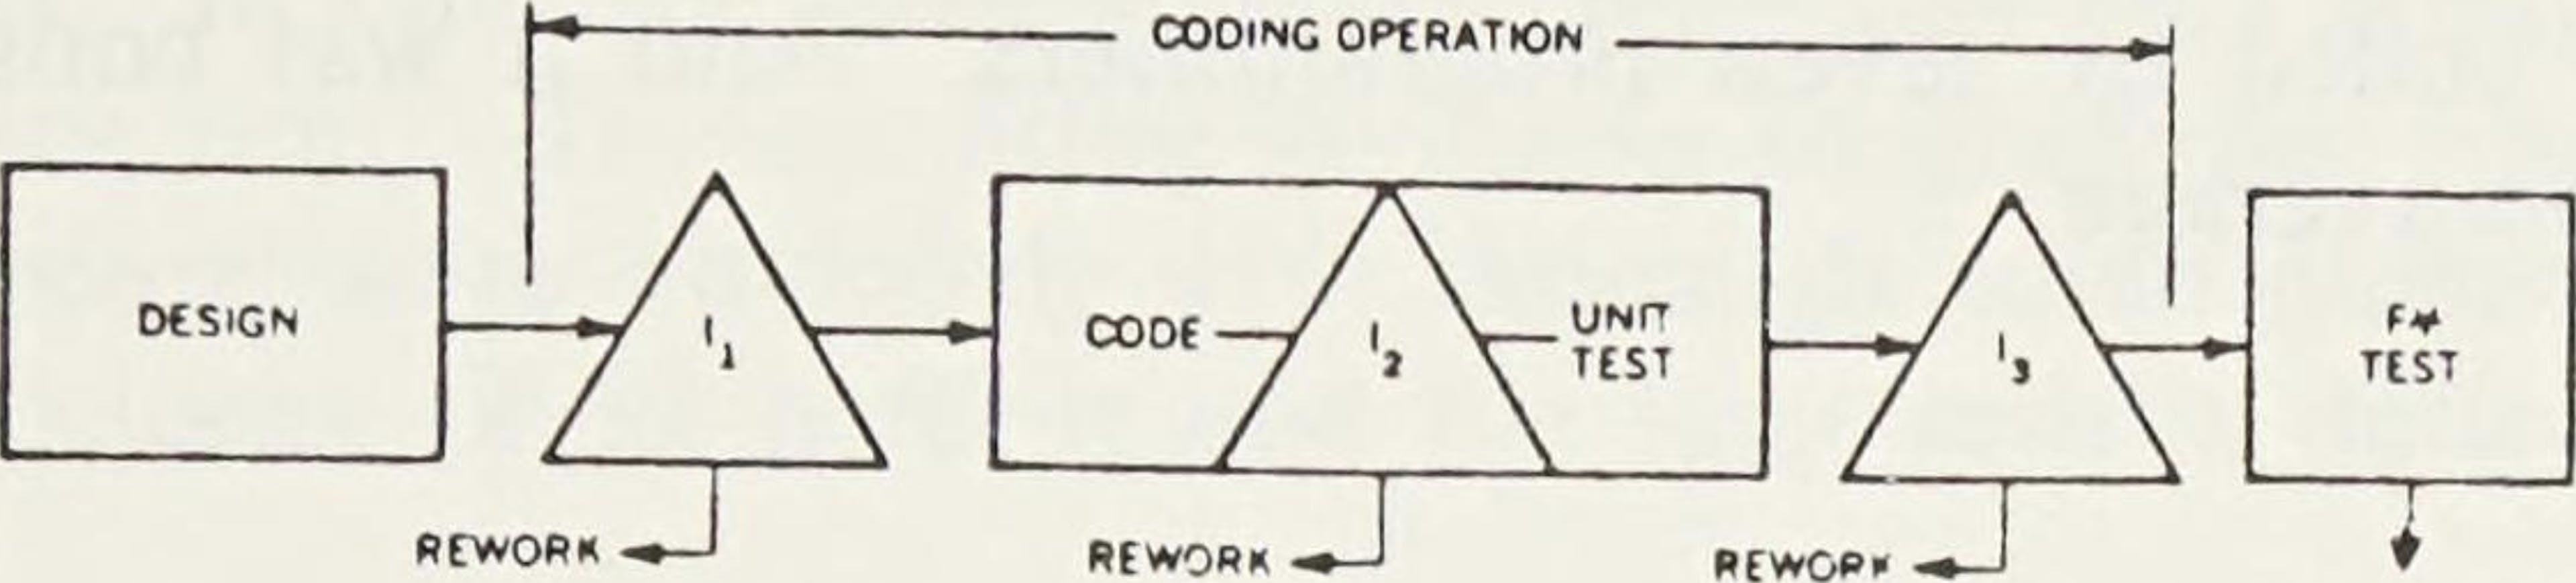 Un schéma de l'article de Michael Fagan sur les inspections de conception et de code